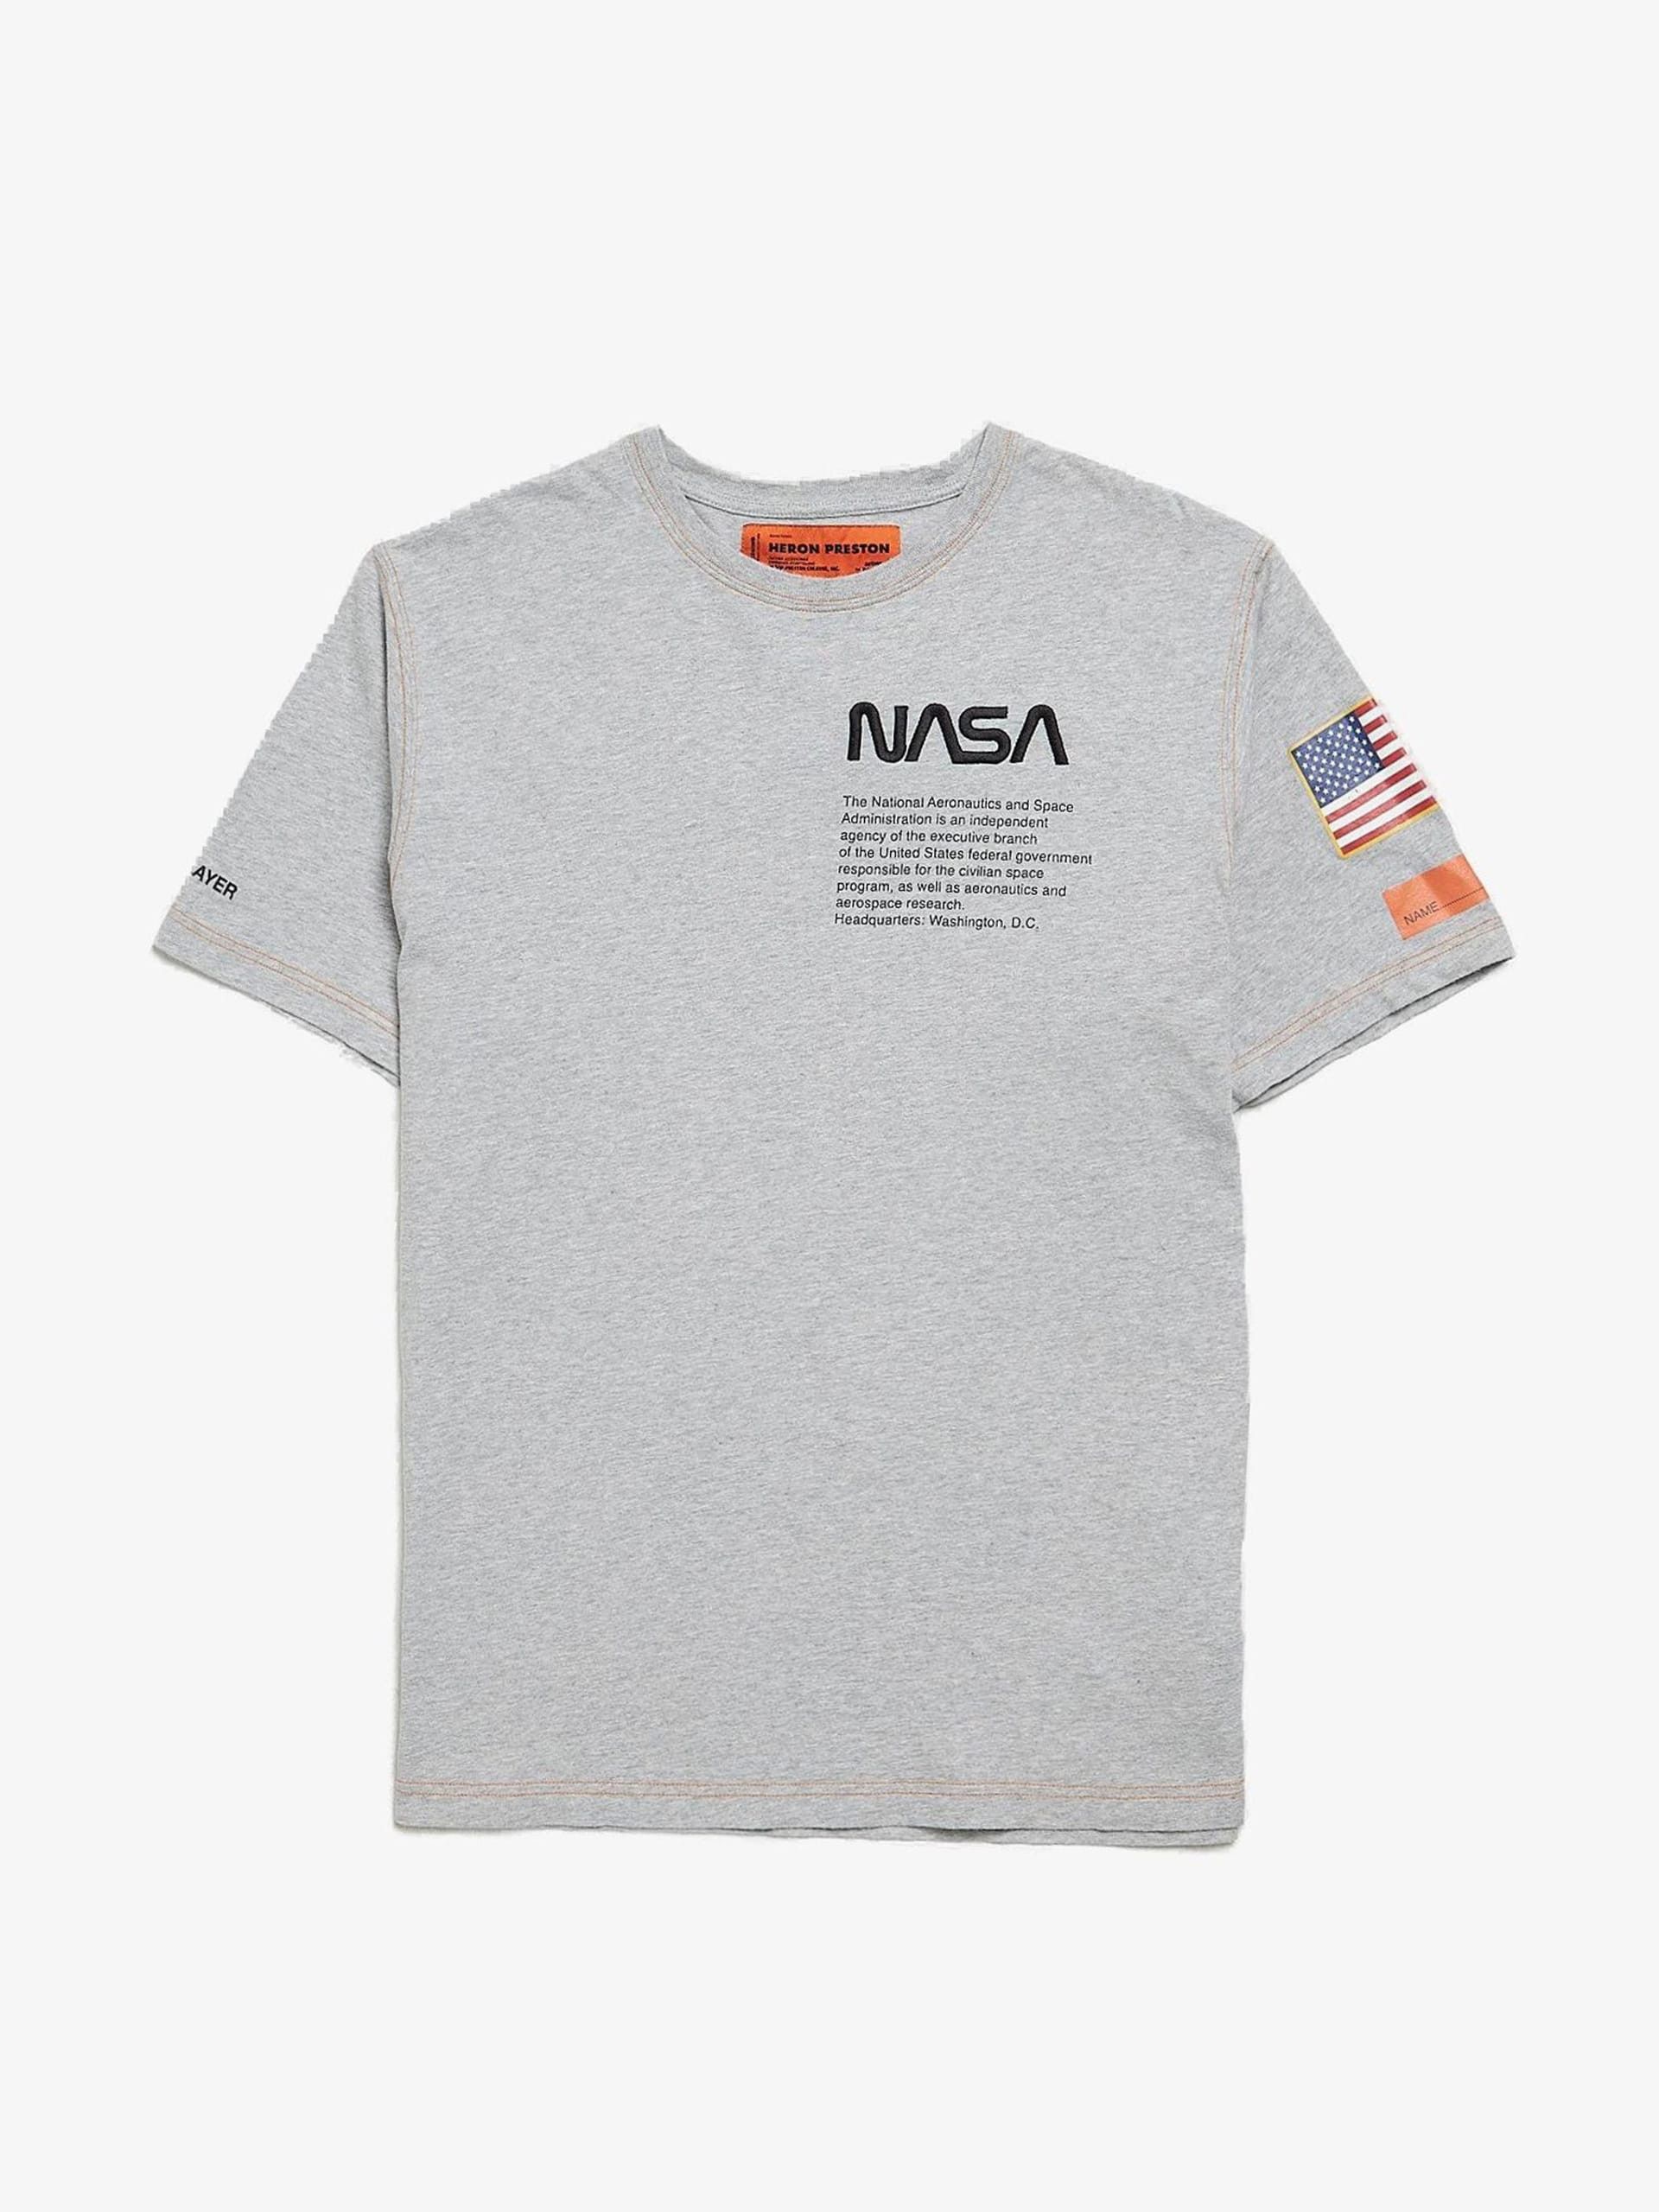 Heron Preston Gray Nasa Printed T-Shirt | Grailed